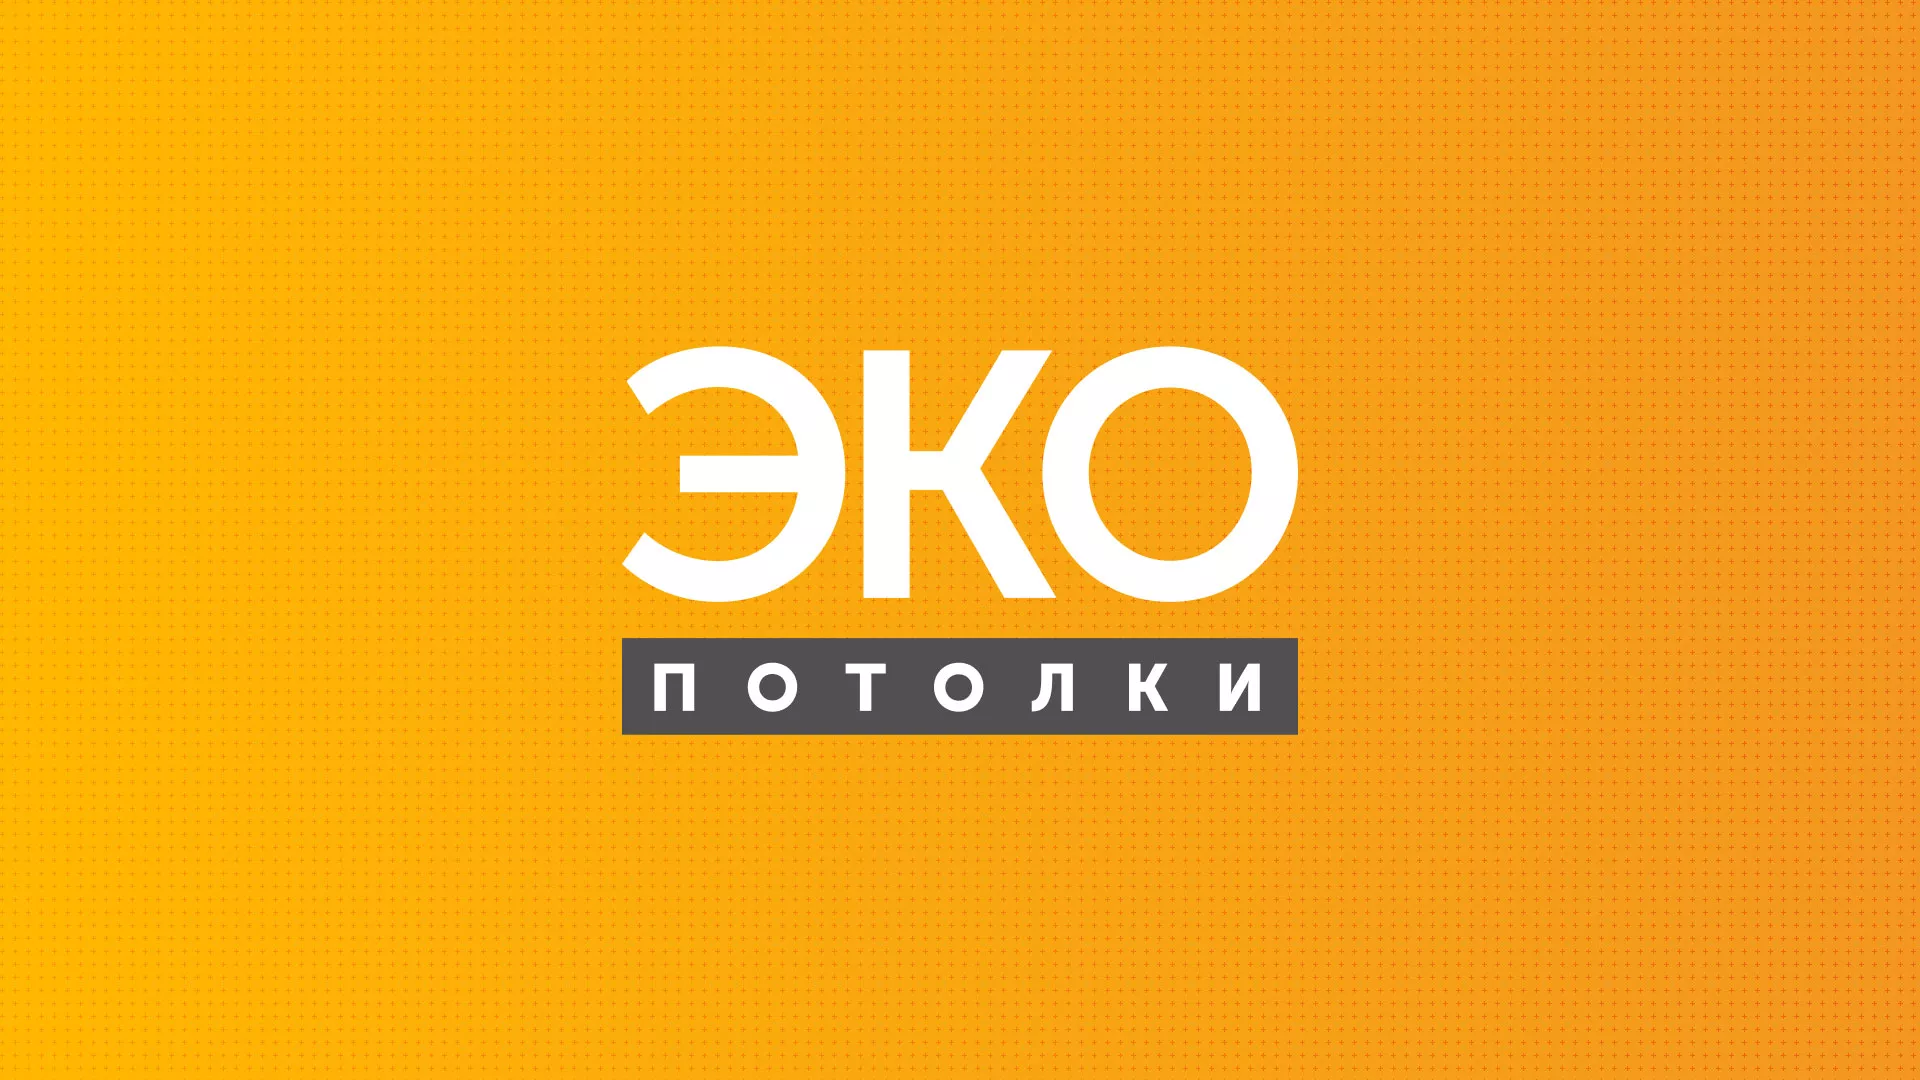 Разработка сайта по натяжным потолкам «Эко Потолки» в Шимановске